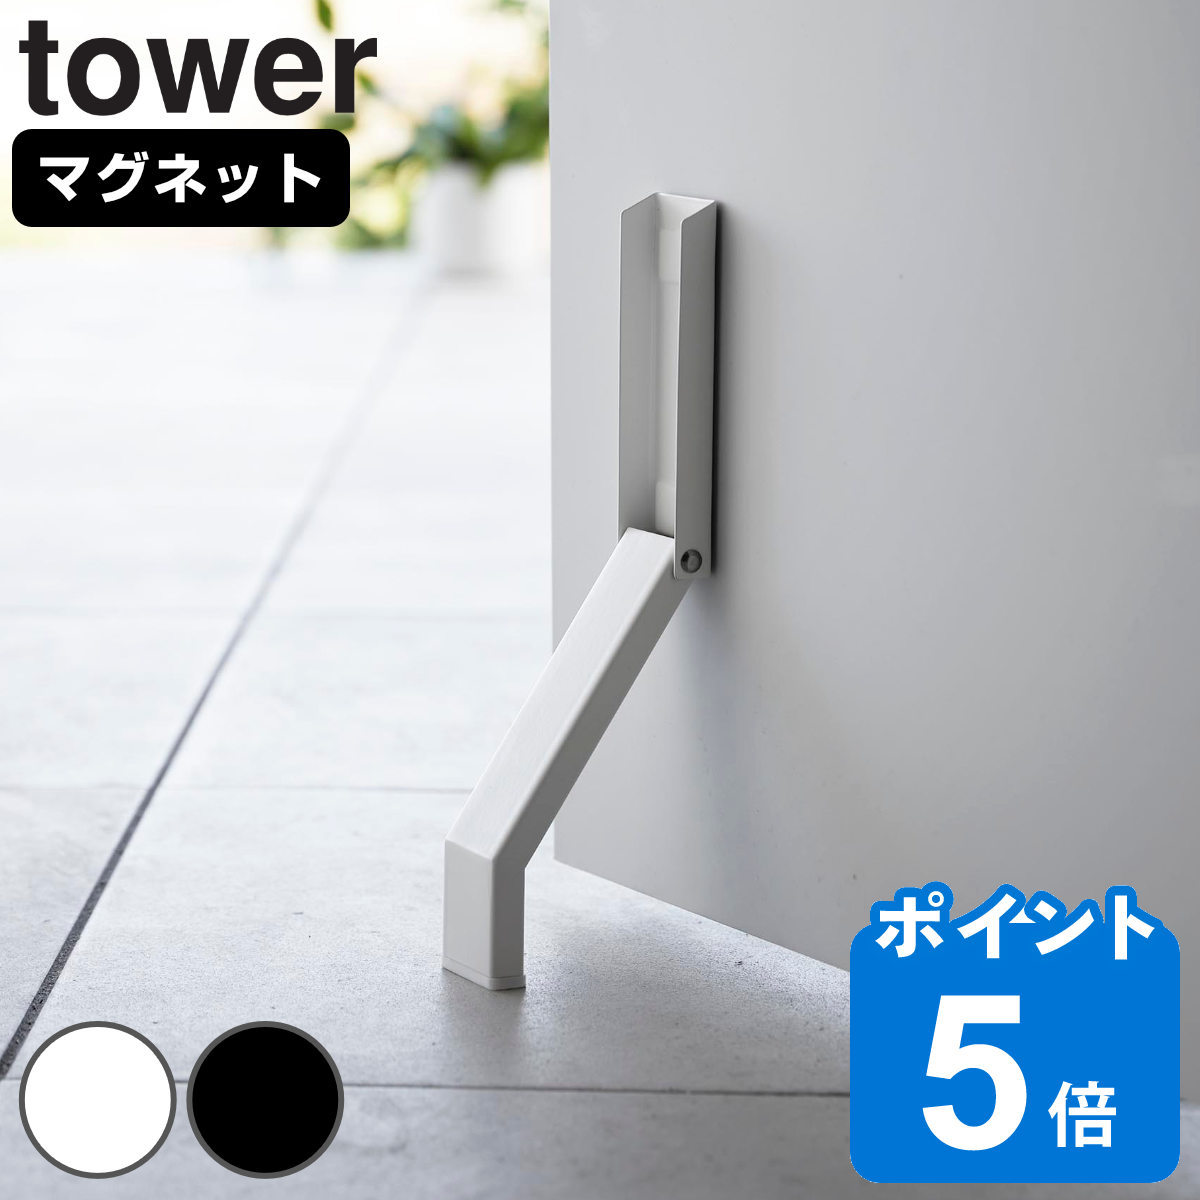 山崎実業 tower マグネット折り畳みドアストッパー タワー